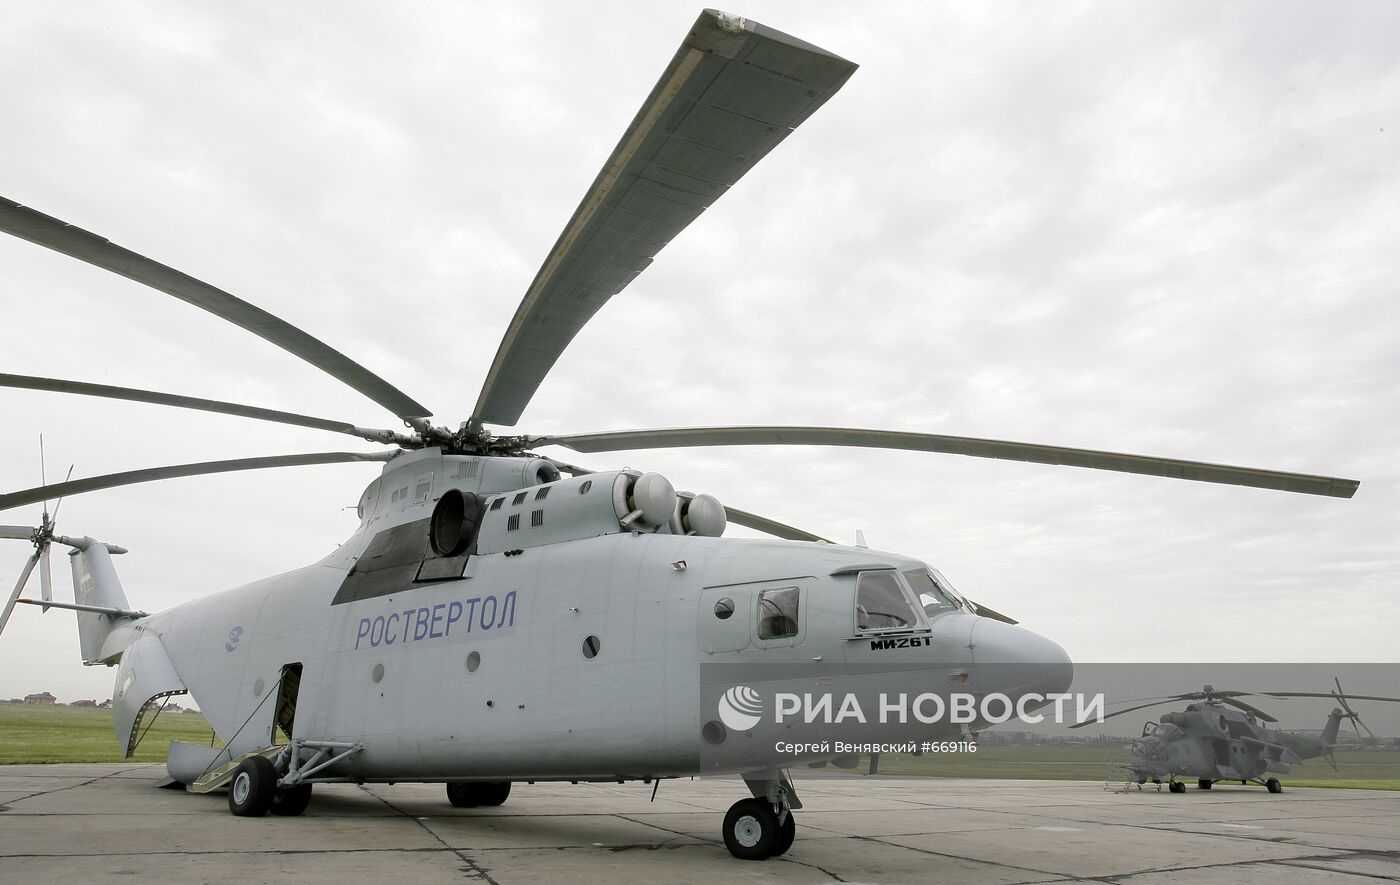 Многоцелевой, широкофюзеляжный транспортный вертолет Ми-26Т